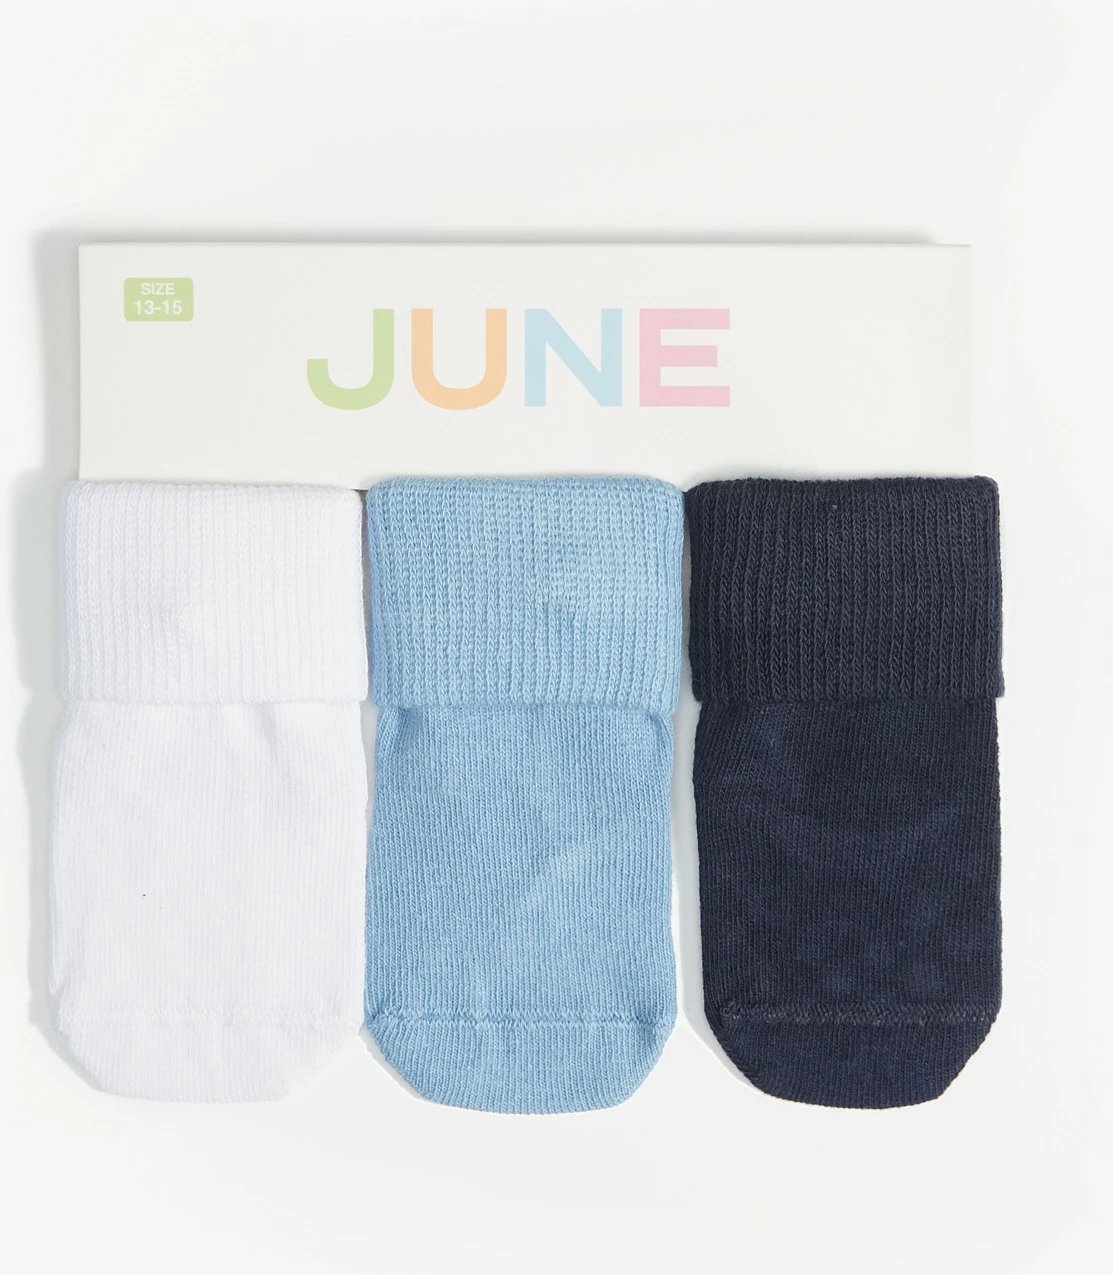 Çorape për bebe June, 3 palë